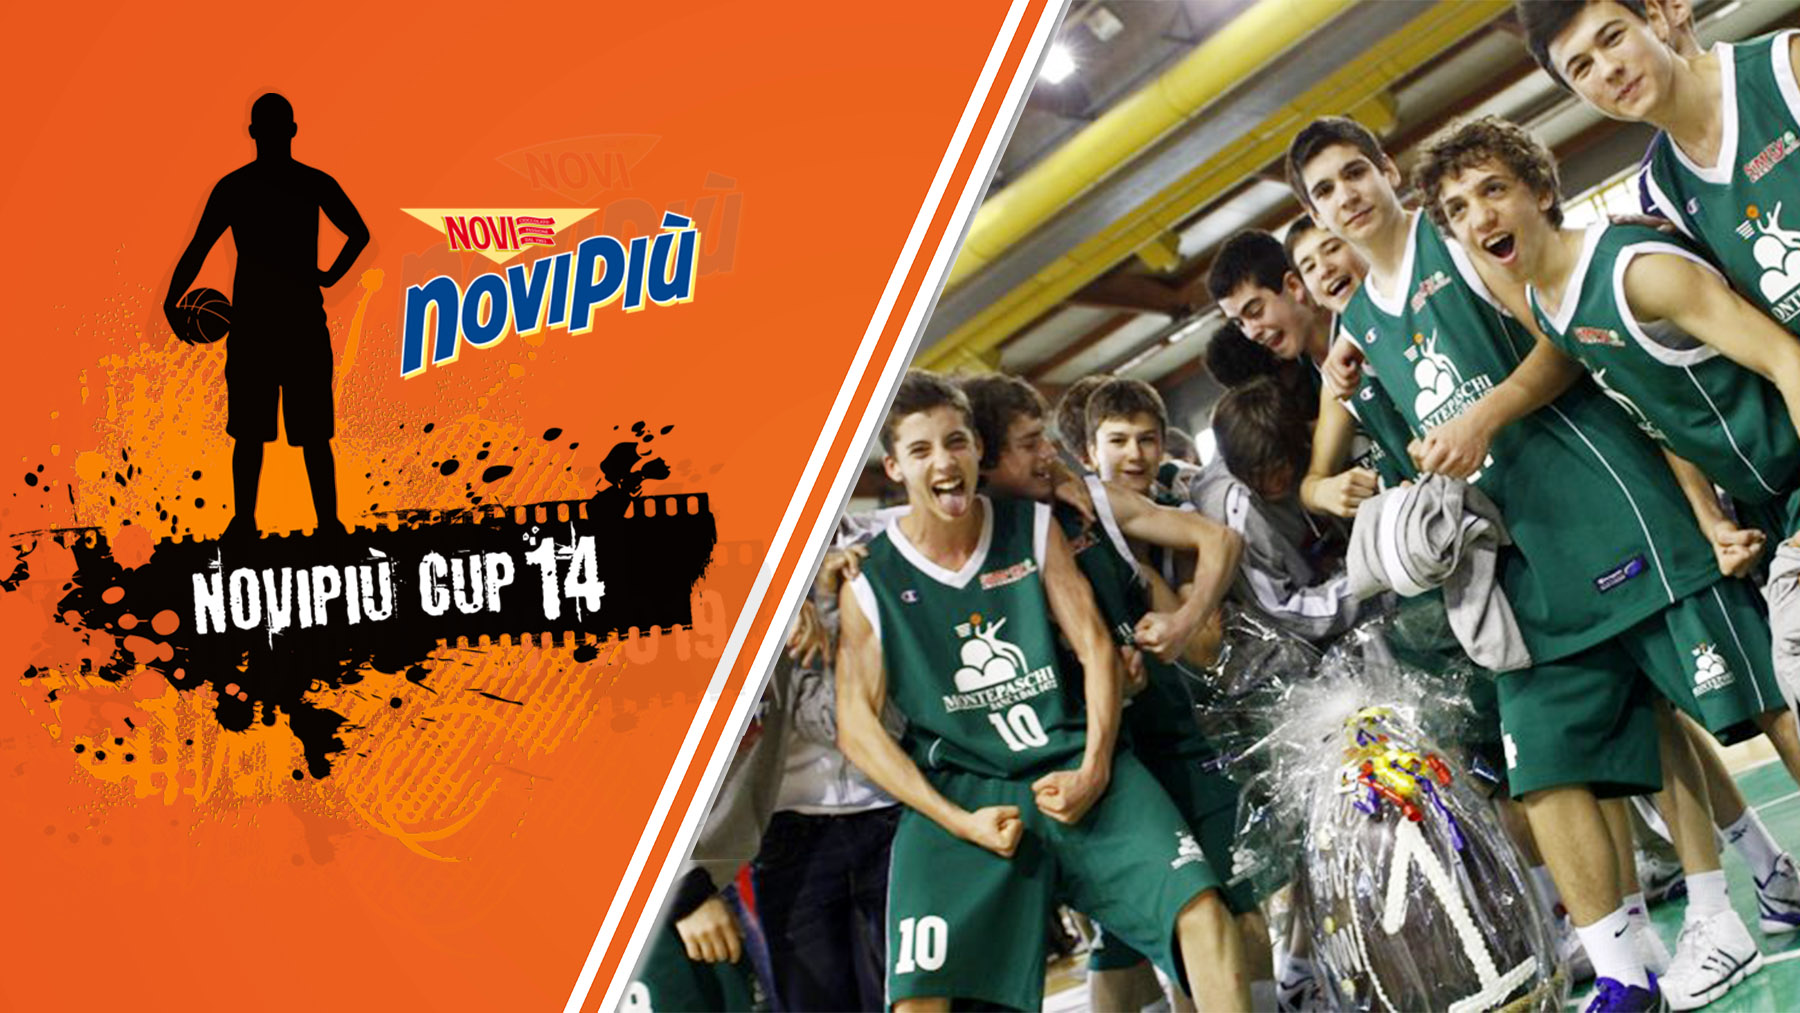 Novipiù Cup 2012